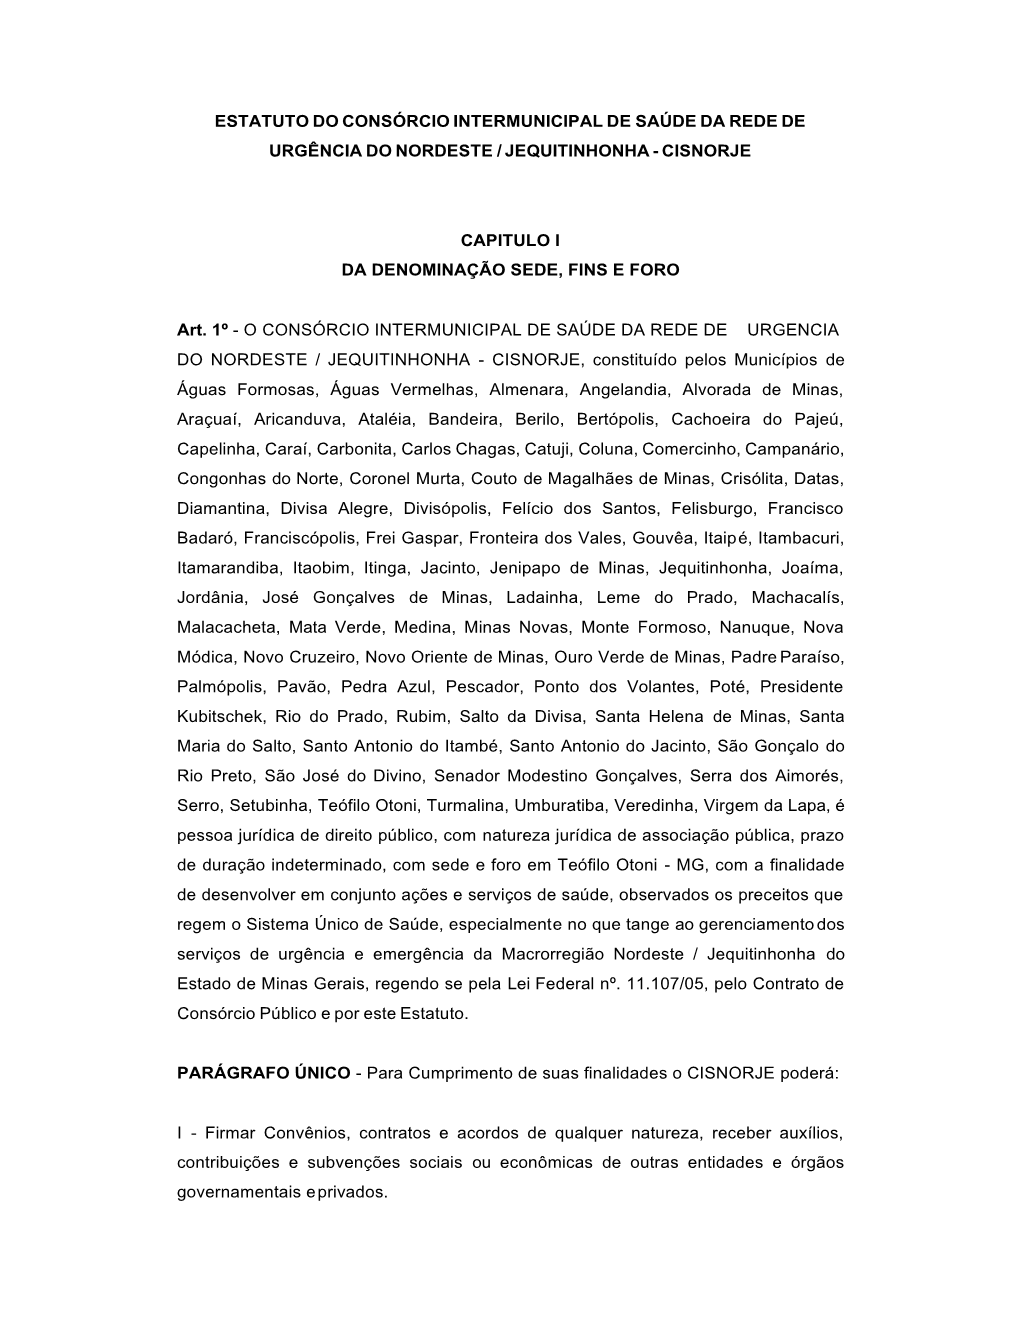 Estatuto Do Consórcio Intermunicipal De Saúde Da Rede De Urgência Do Nordeste / Jequitinhonha - Cisnorje